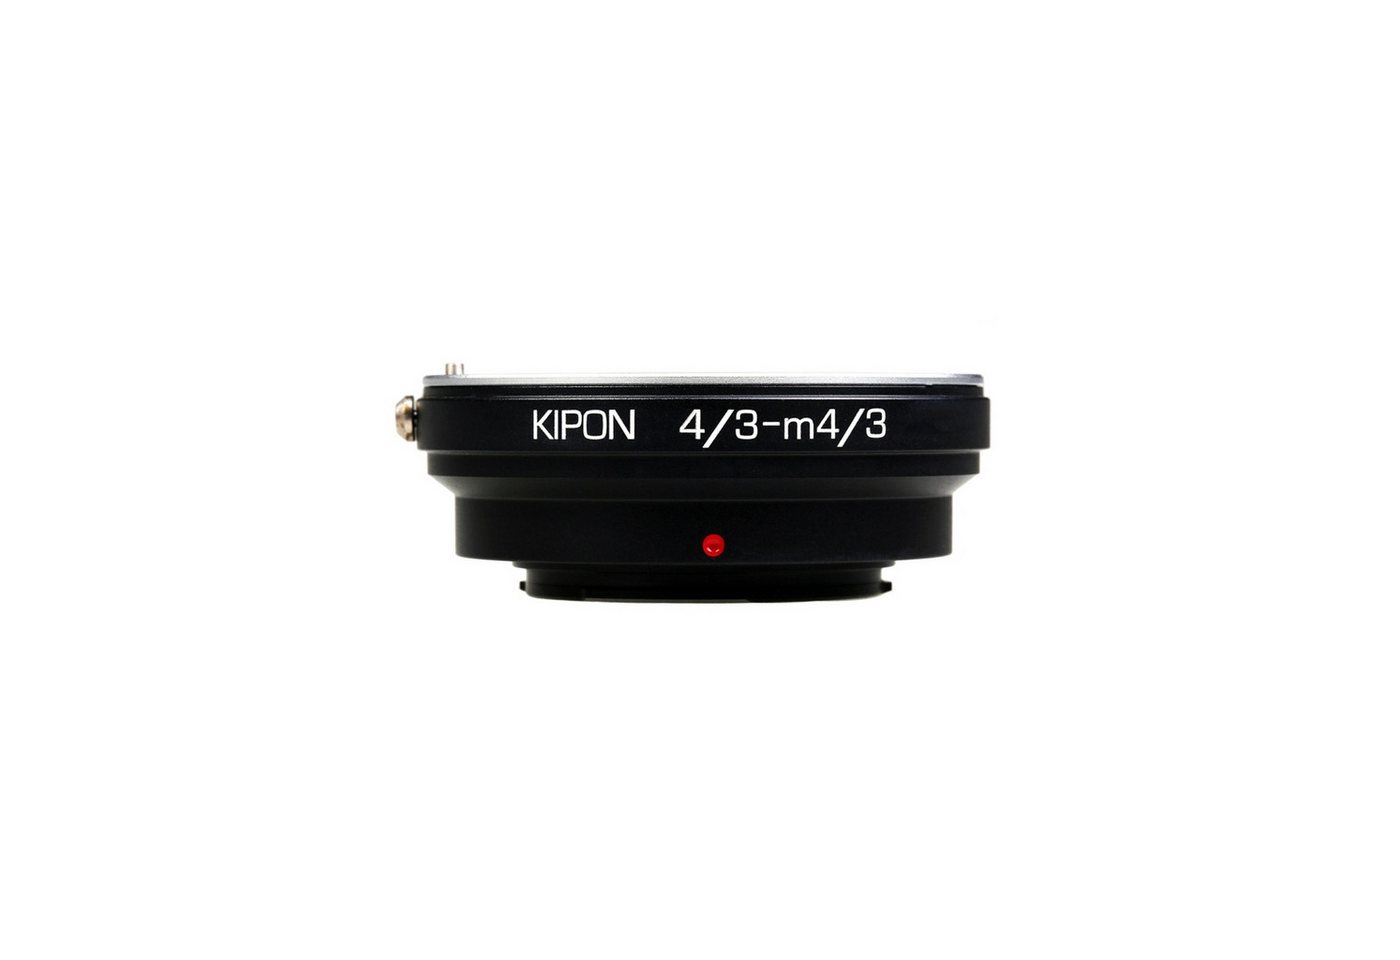 Kipon Adapter für 4/3 auf MFT Objektiveadapter von Kipon